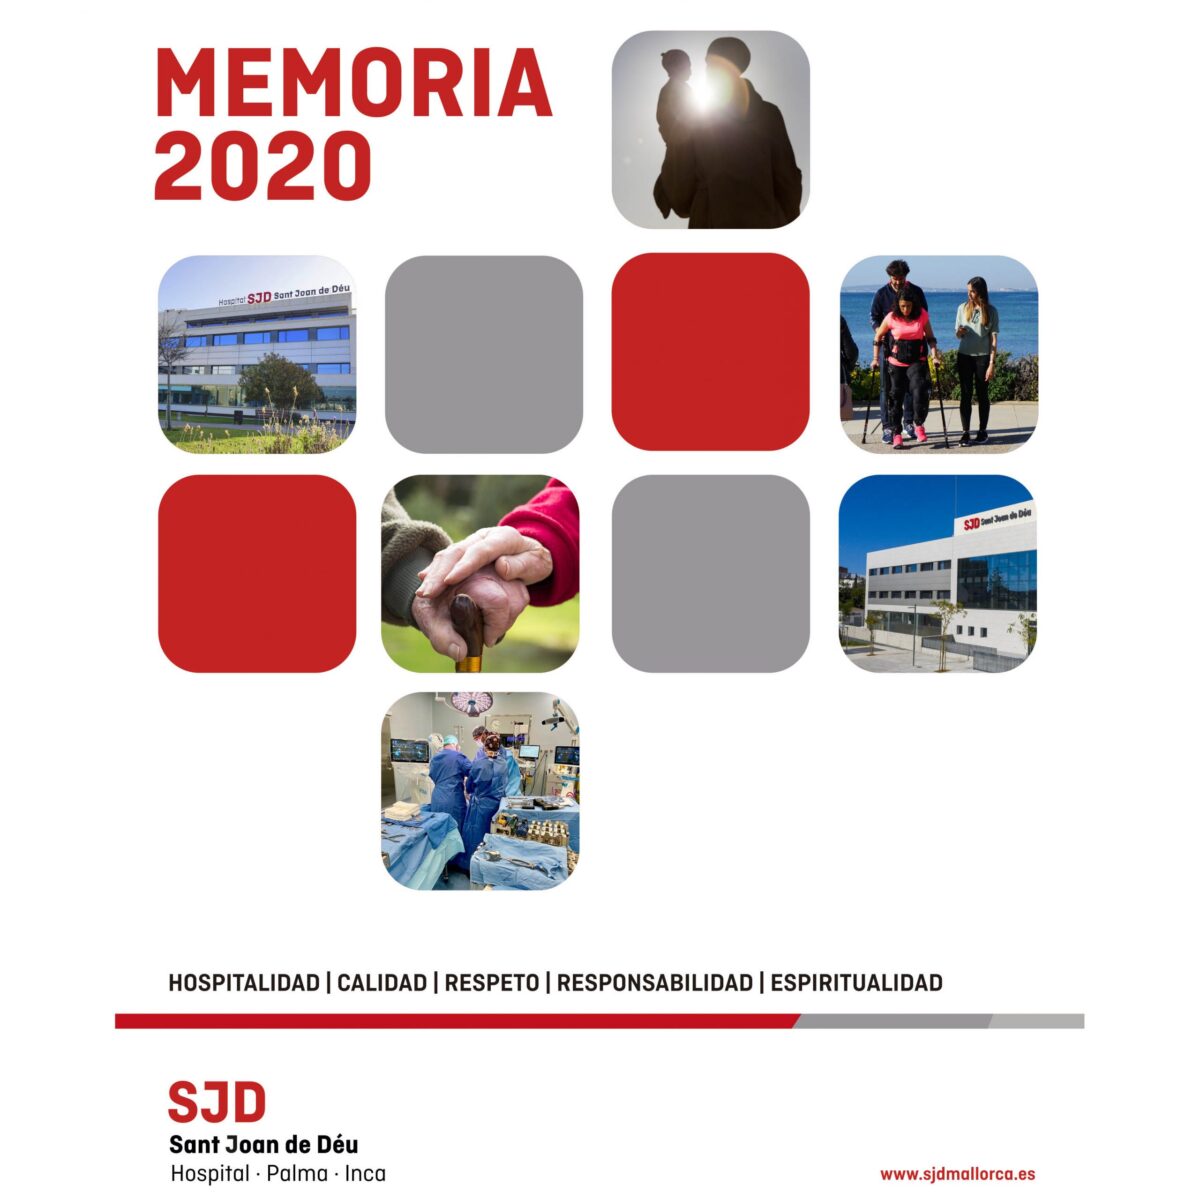 Memoria-2020-Hospital-SJD-Palma-·-Inca-cuadrado-scaled-1-1200x1200.jpg